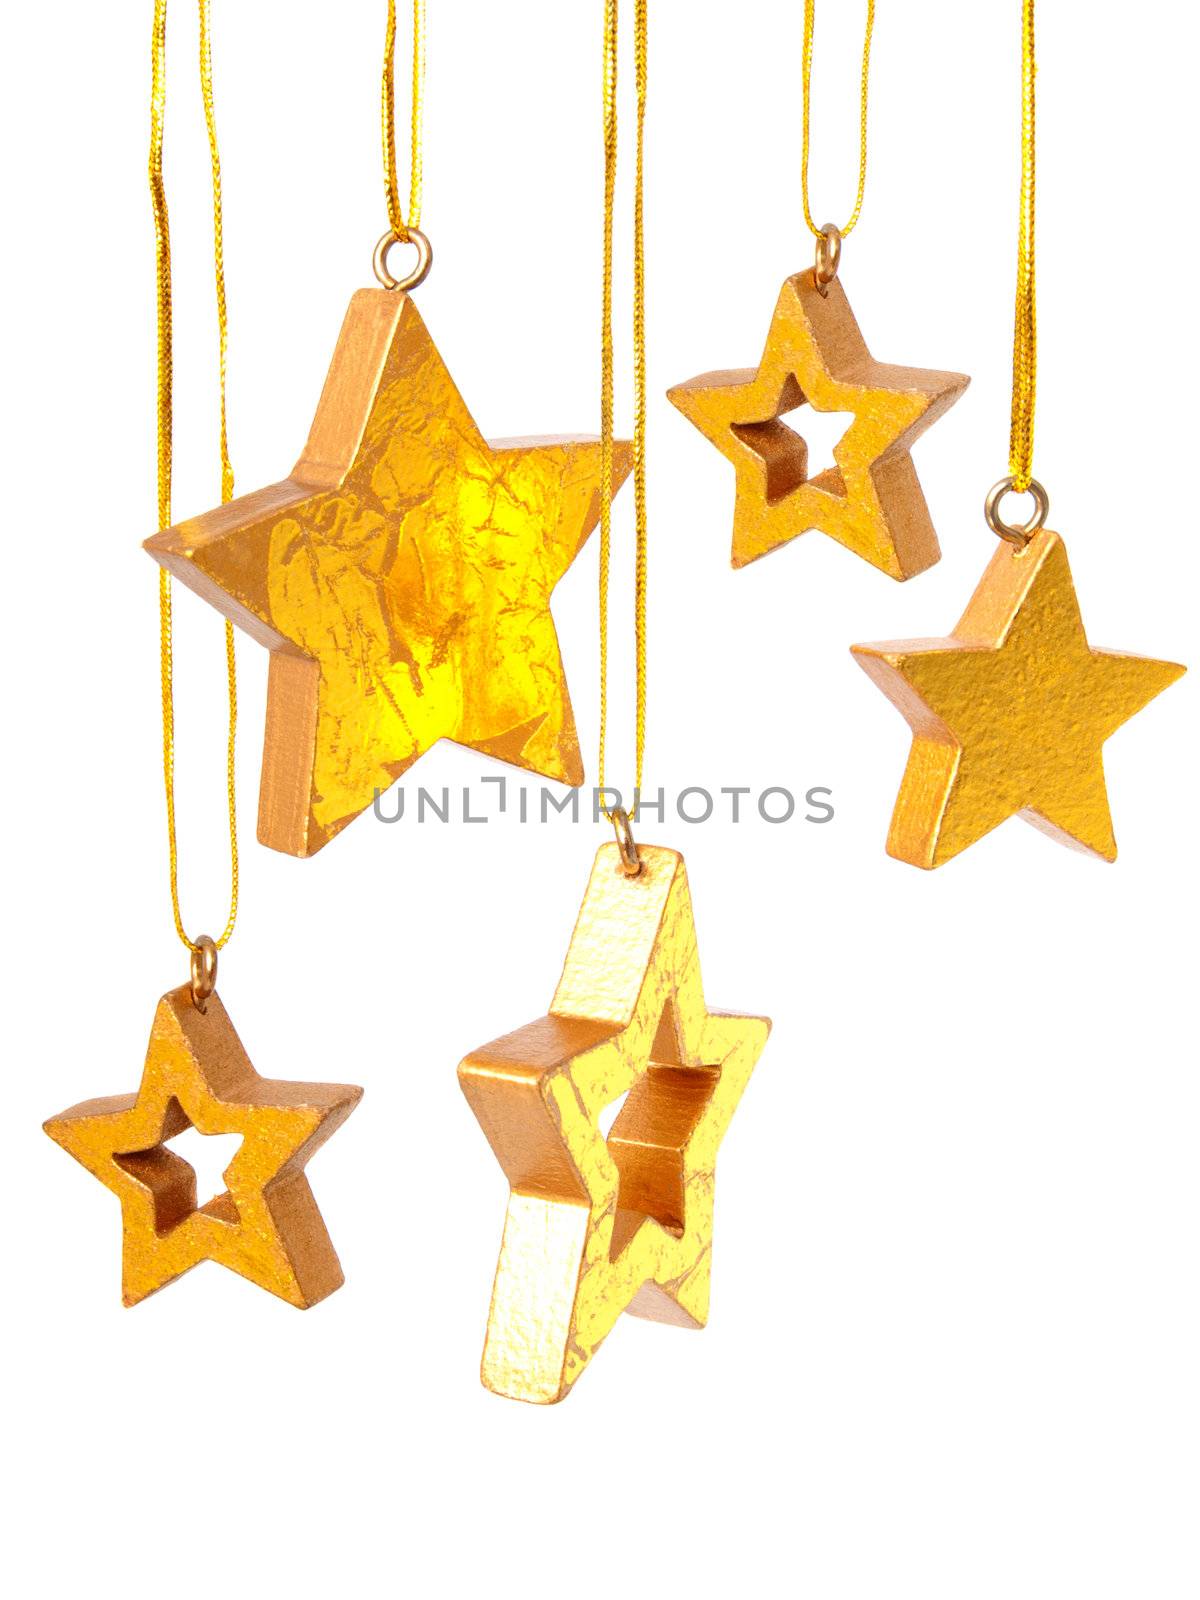 Golden Christmas stars by motorolka